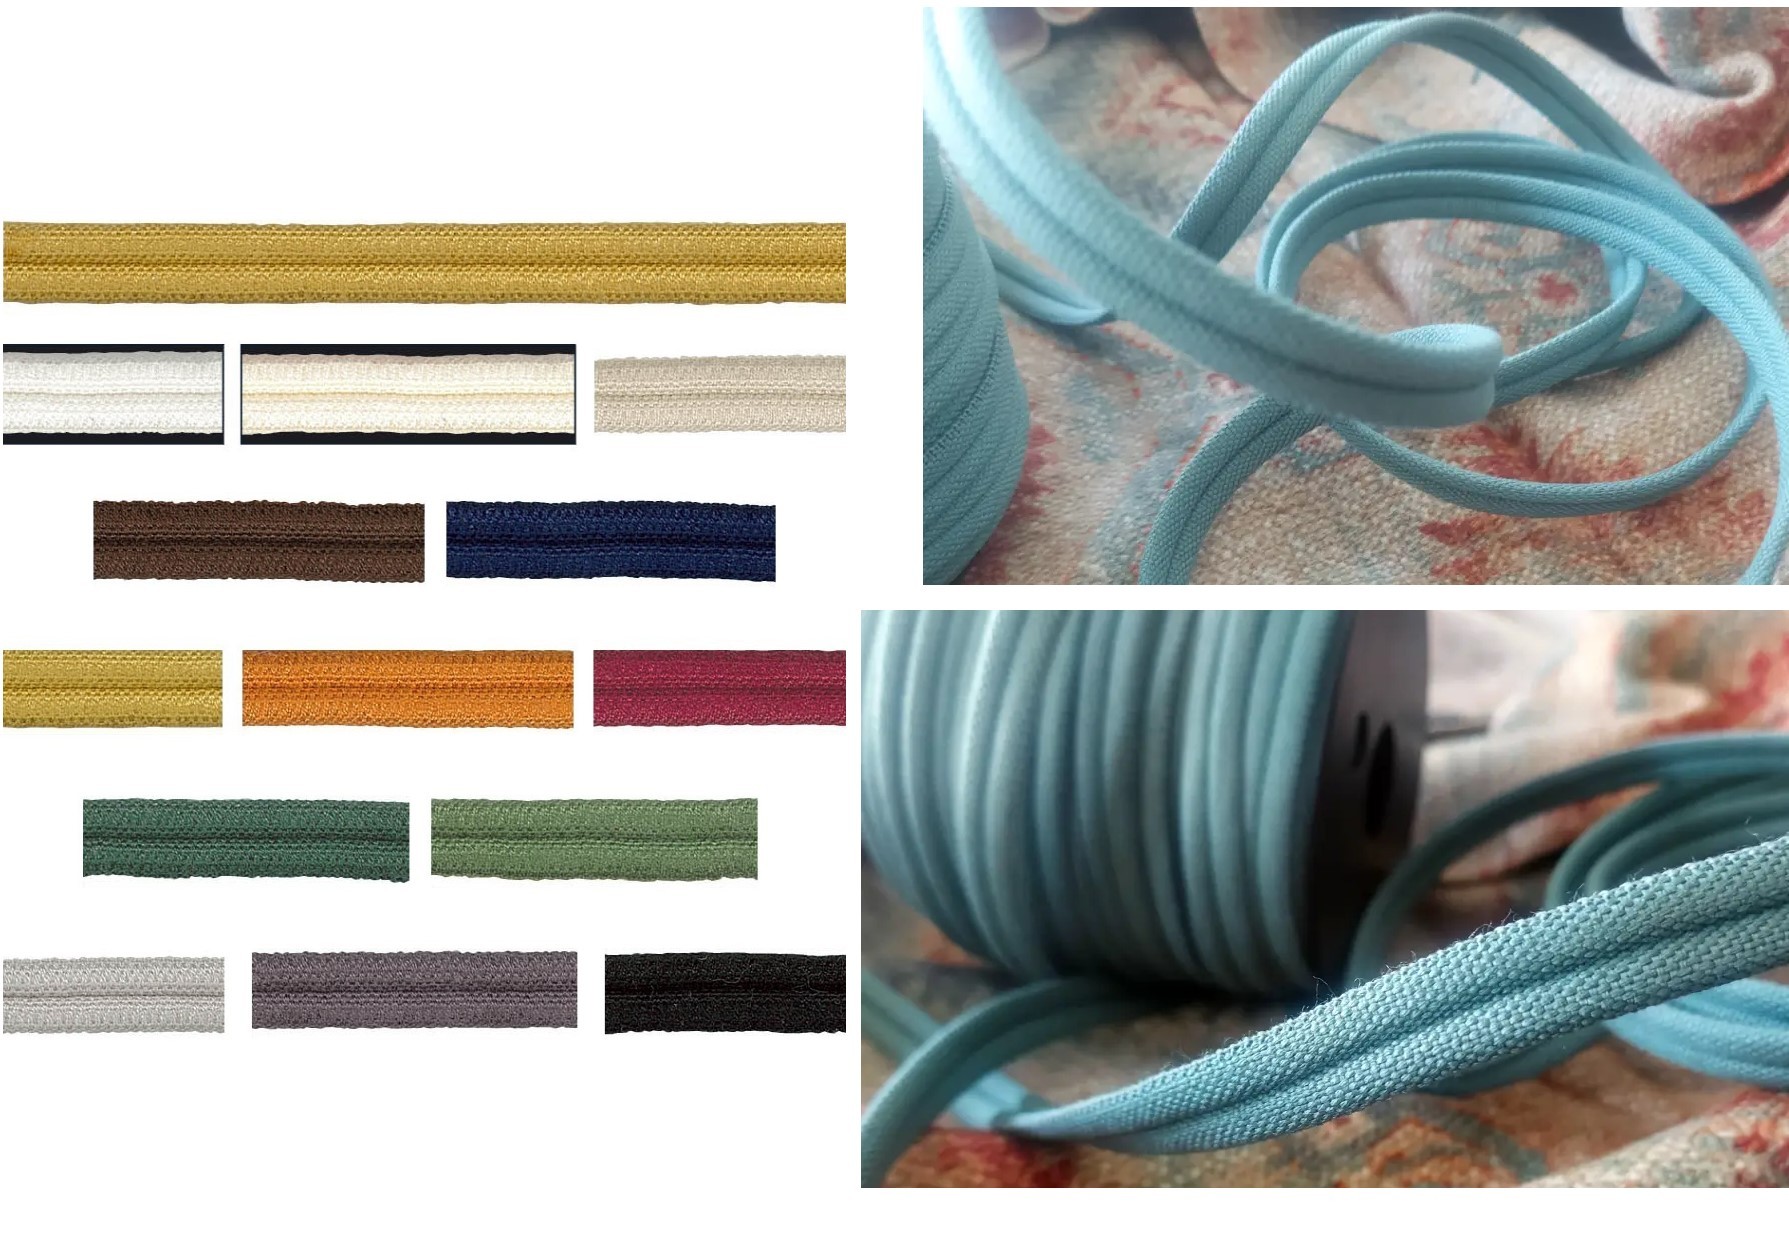 Comprar Cuerda para macramé 4,5mm de grosor Rosas Craft - Mercería Sarabia